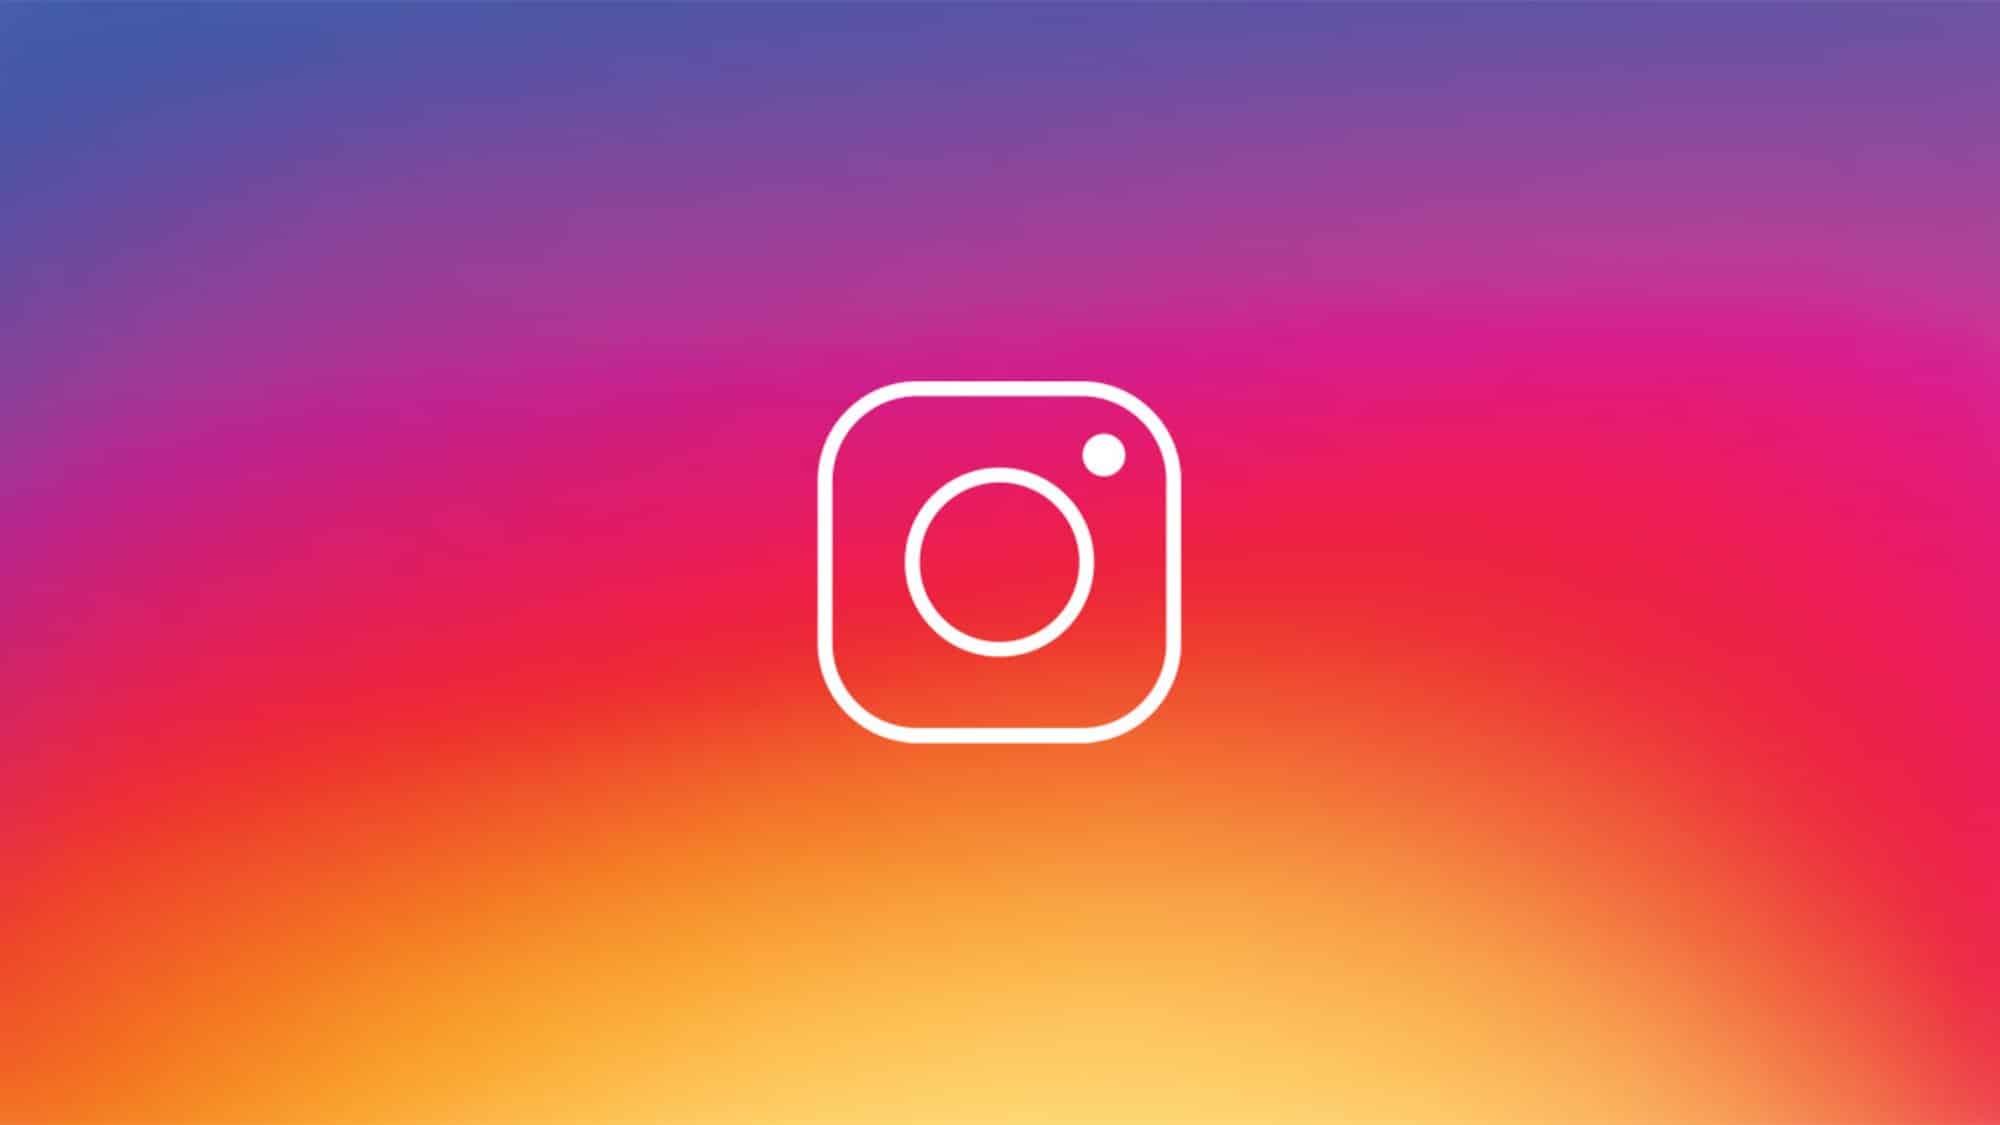 Le logo Instagram en transparence sur un fond multicolor.